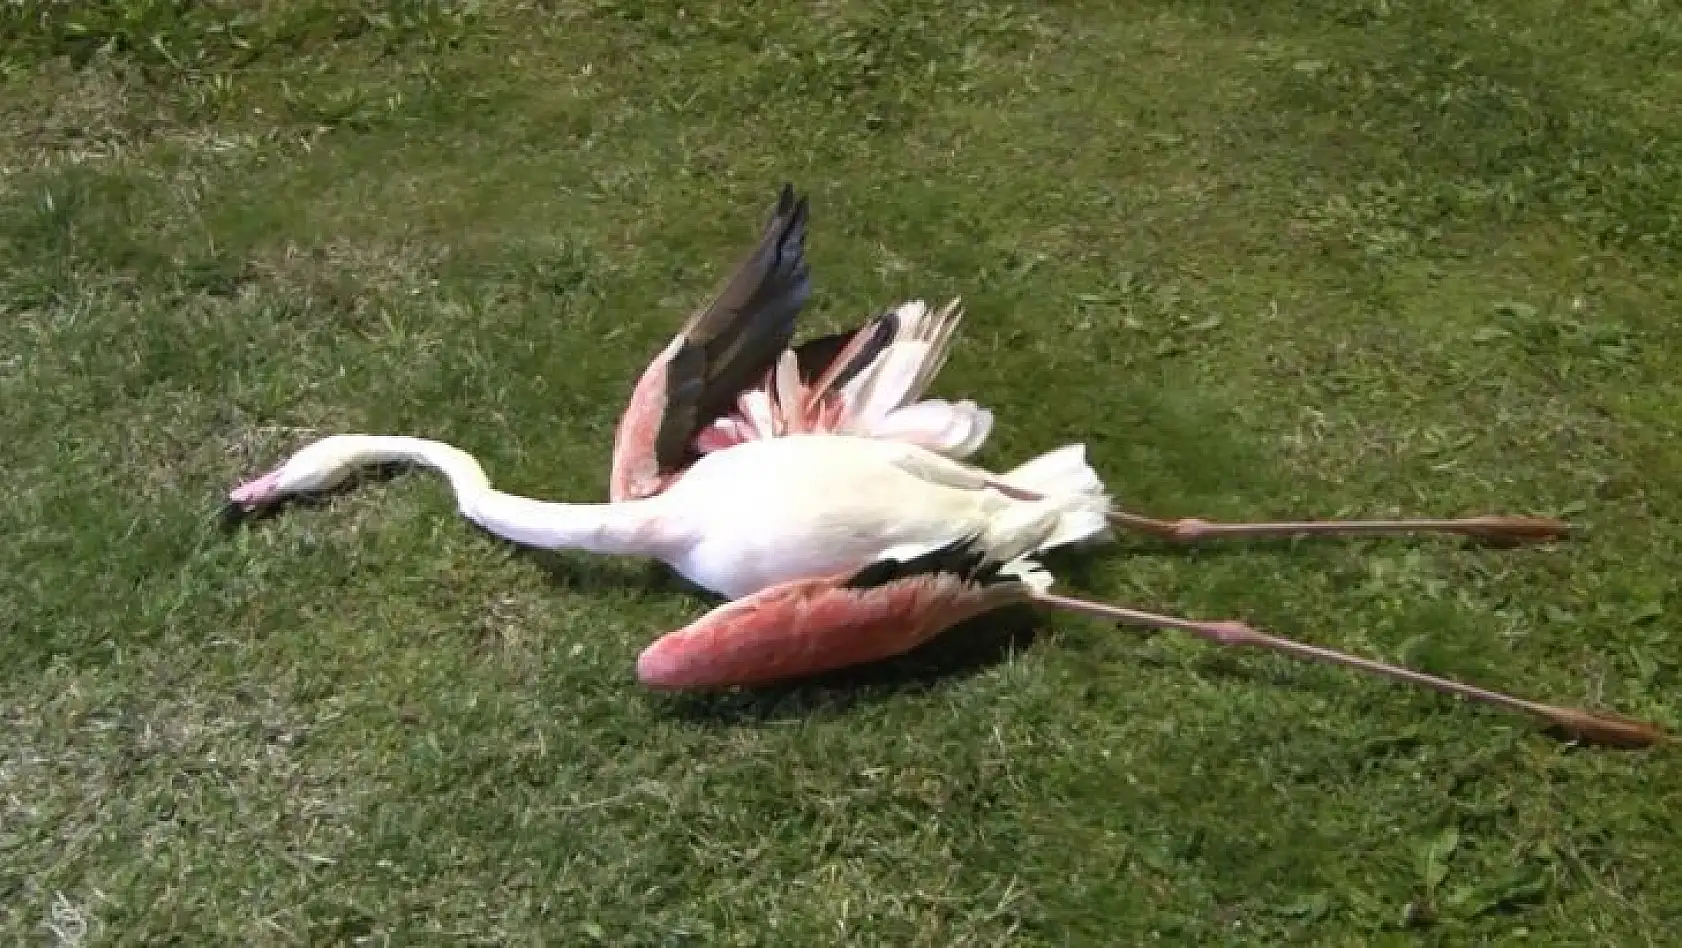 İzmir'de flamingoların toplu ölümü endişe uyandırdı